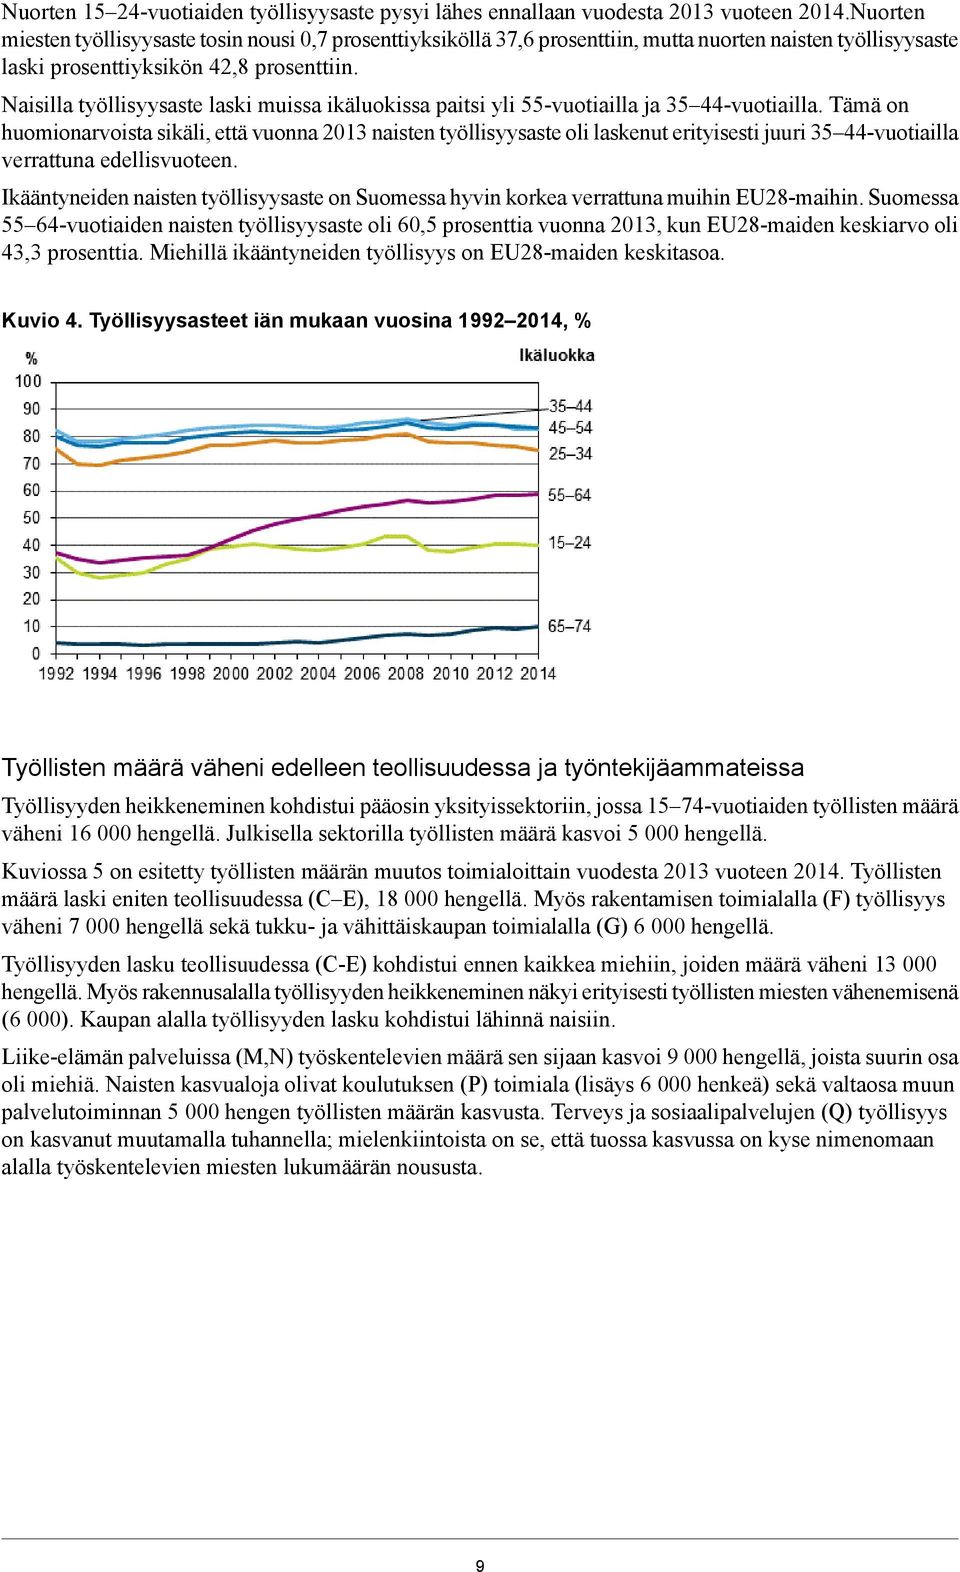 oli laskenut erityisesti juuri 3 44-vuotiailla verrattuna edellisvuoteen Ikääntyneiden naisten työllisyysaste on Suomessa hyvin korkea verrattuna muihin EU28-maihin Suomessa 64-vuotiaiden naisten